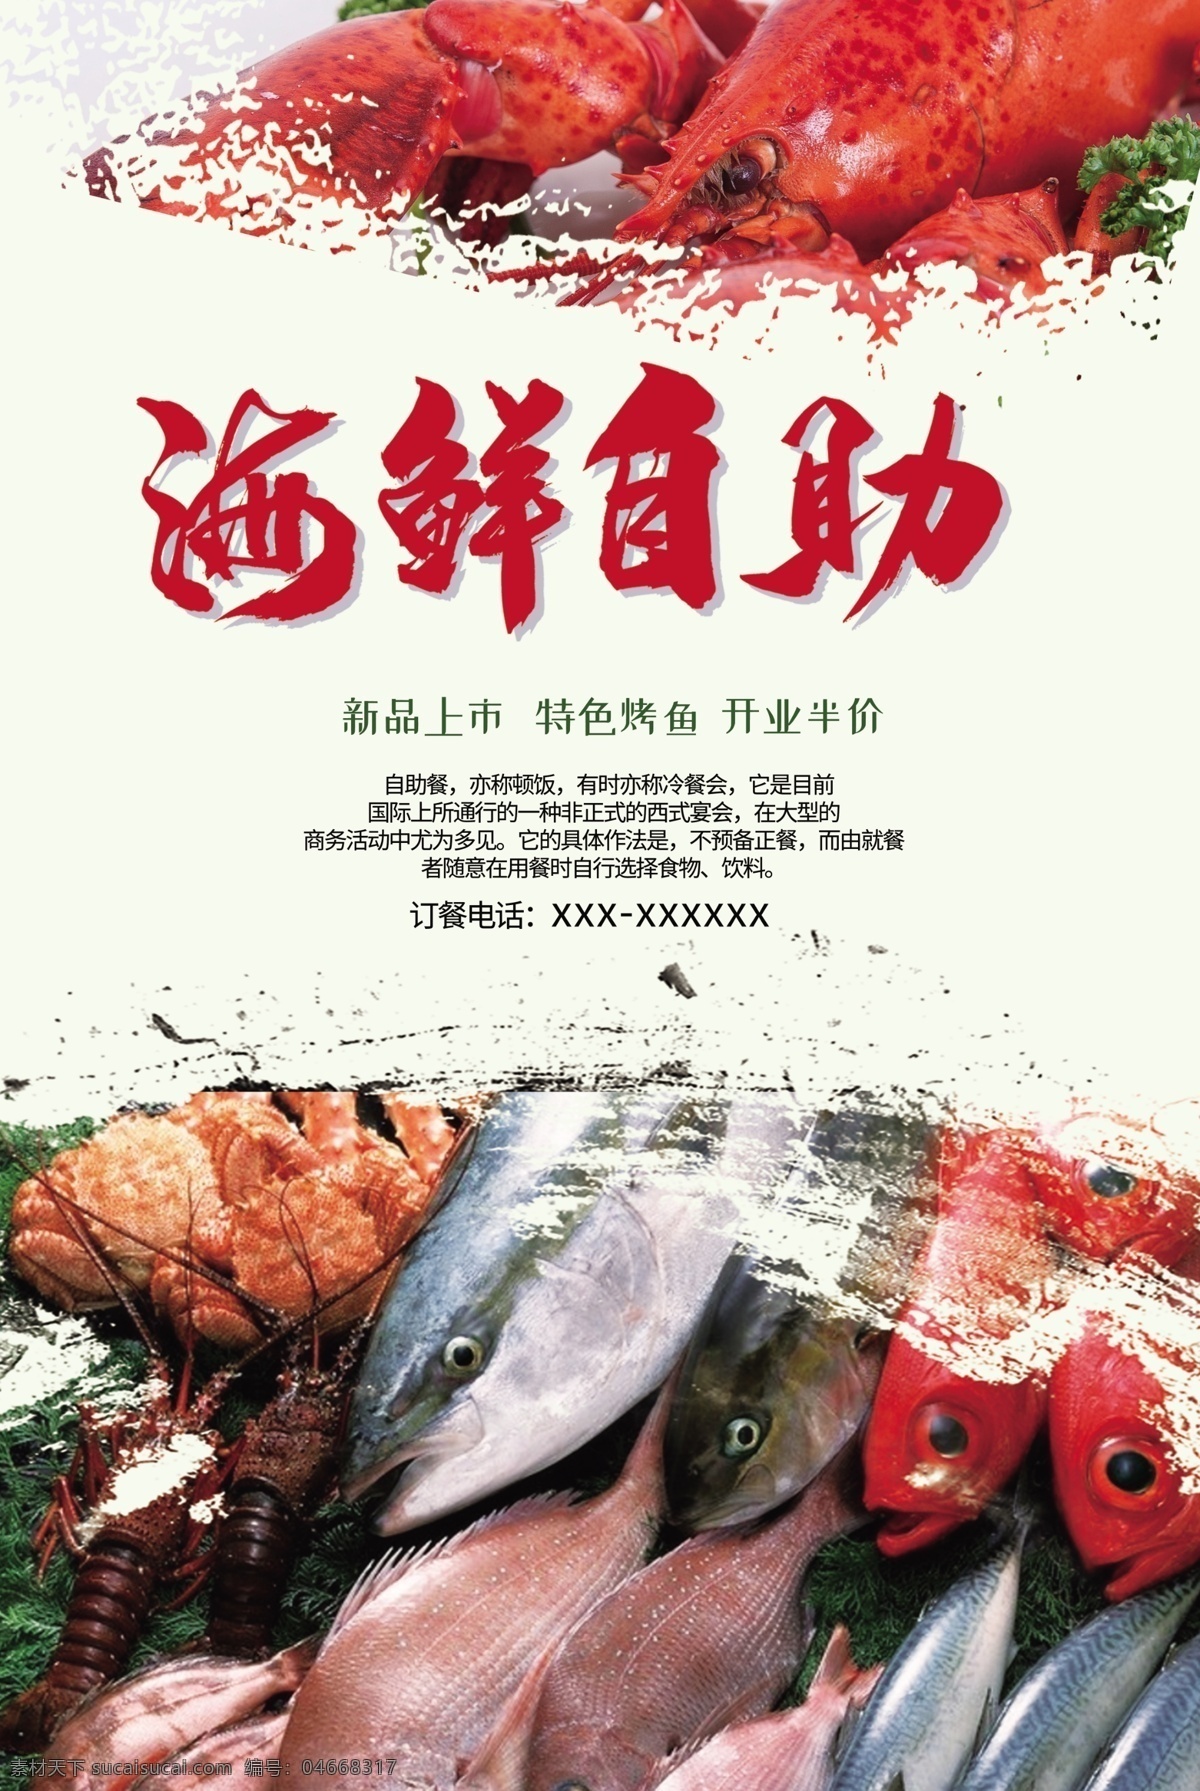 海鲜自助海报 海鲜自助 美食海报 春季海鲜 海虾 海鲜广告 美食城广告